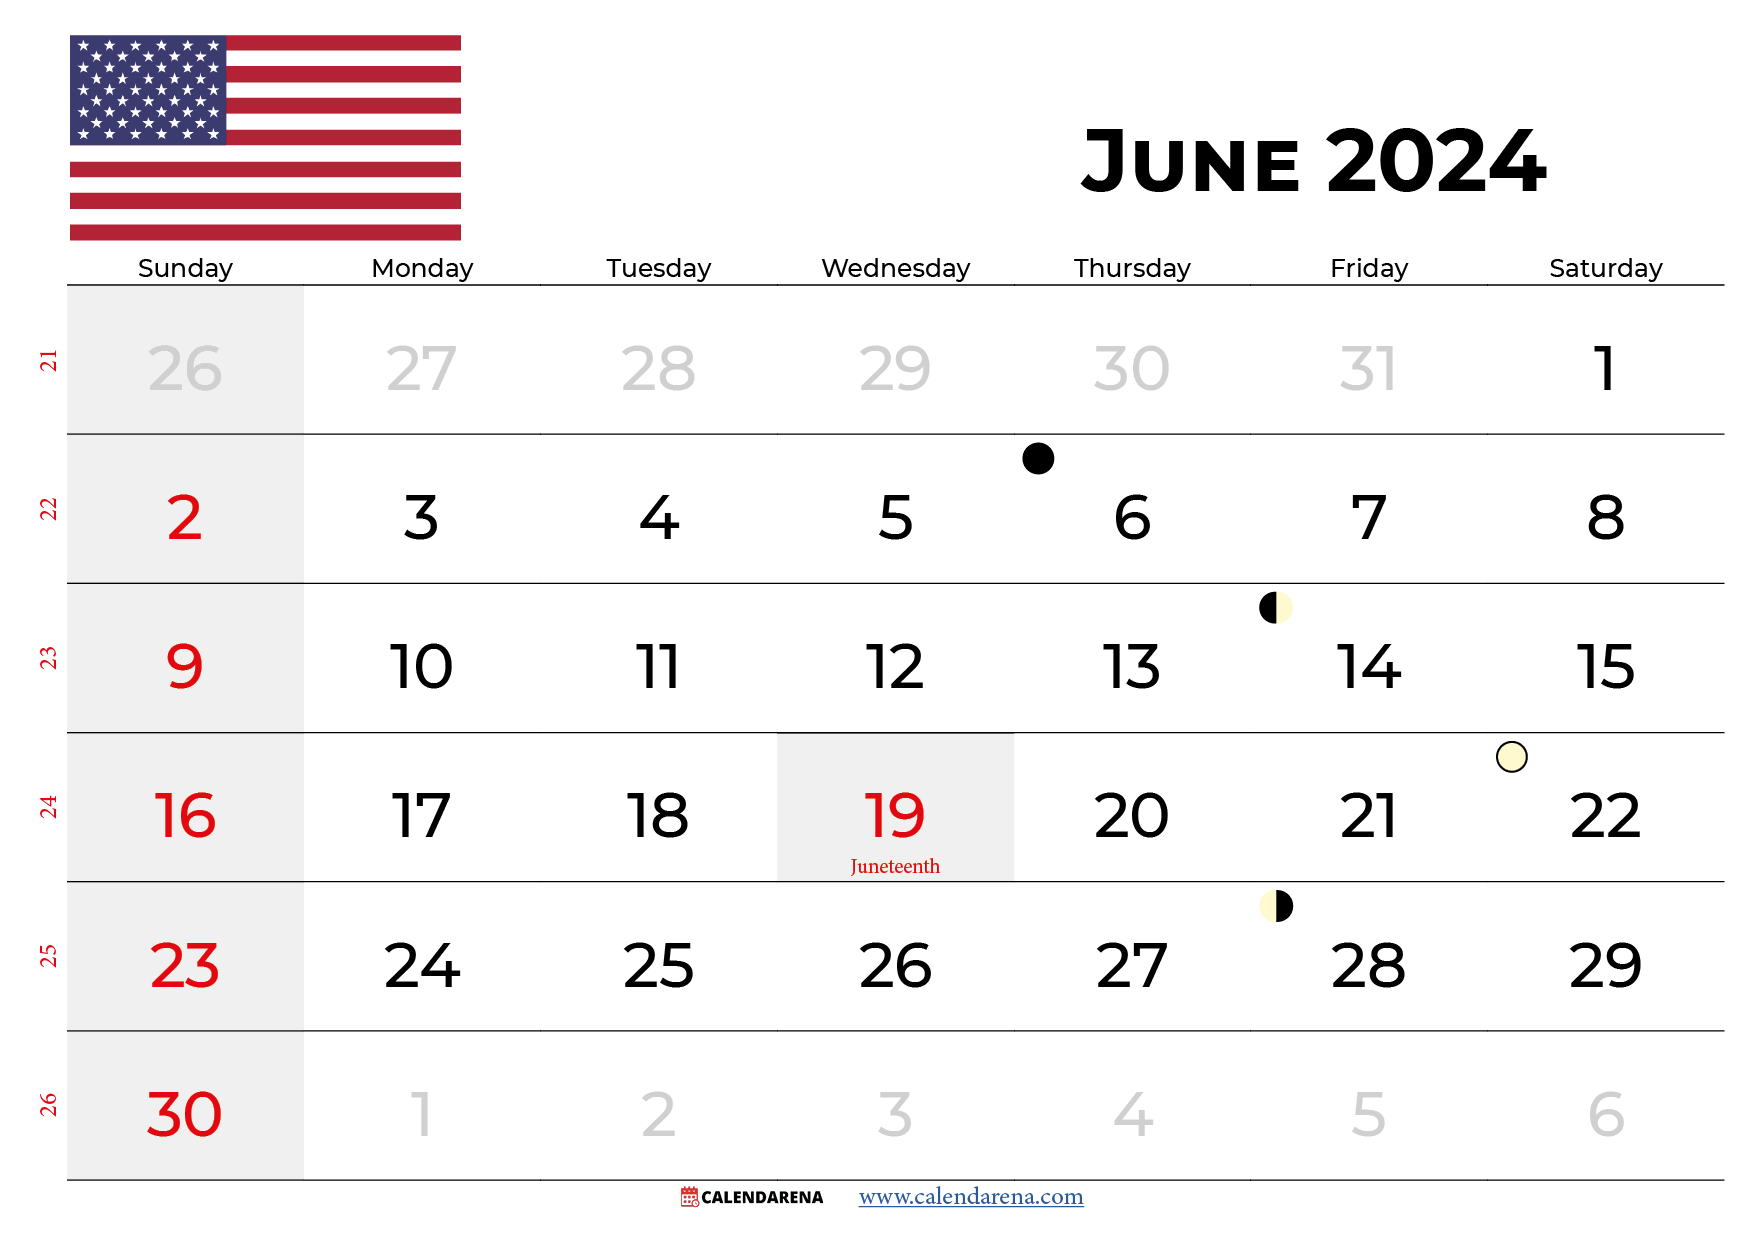 june 2024 calendar USA